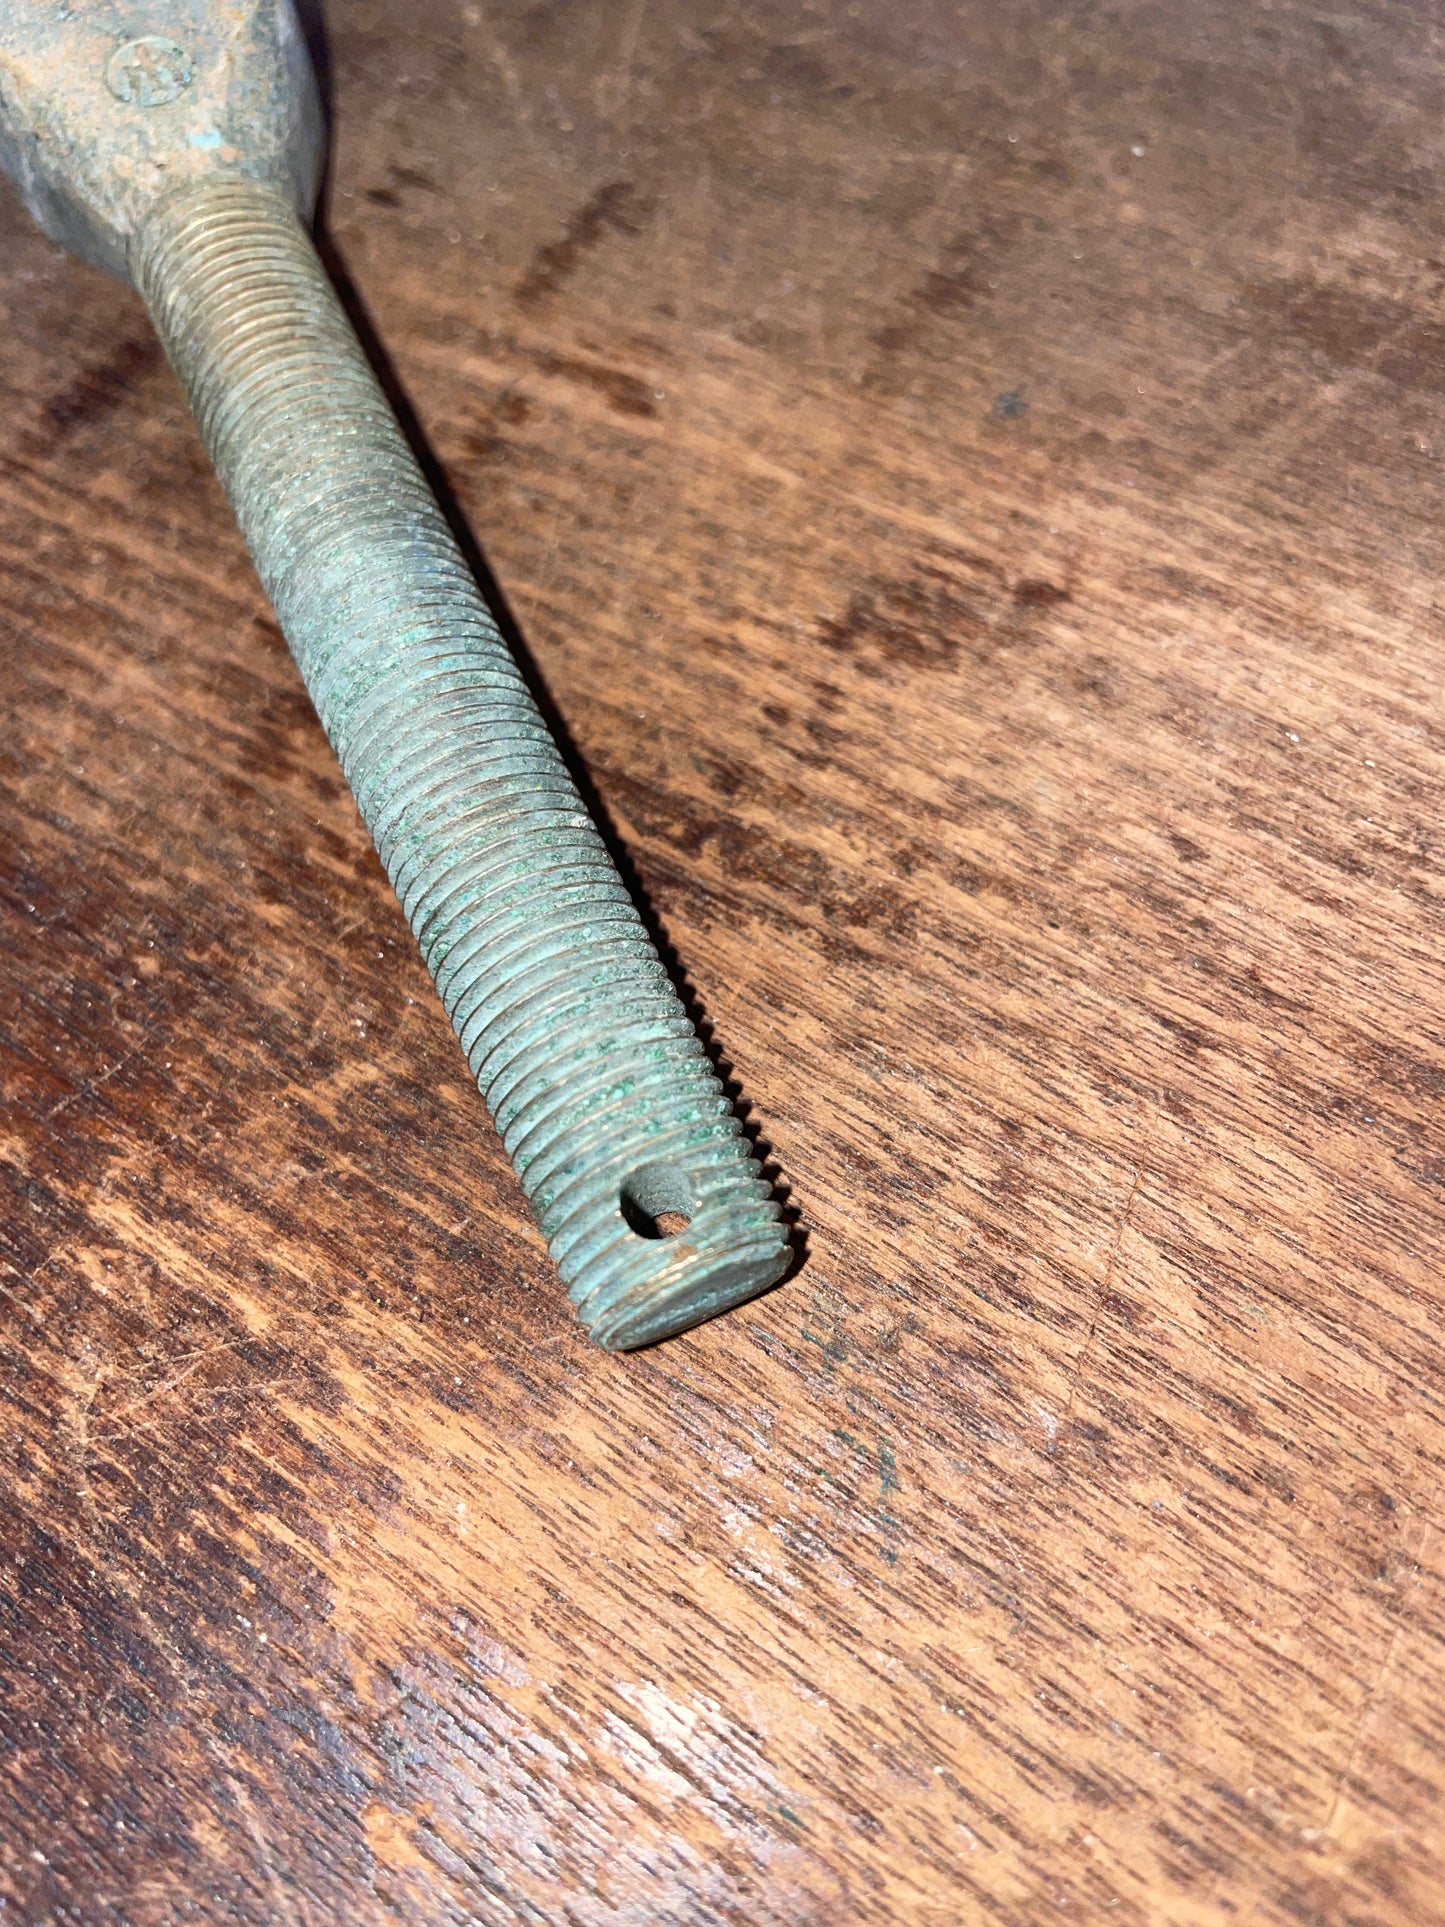 Bronze Merriman 1/2” Turnbuckle Jaw End